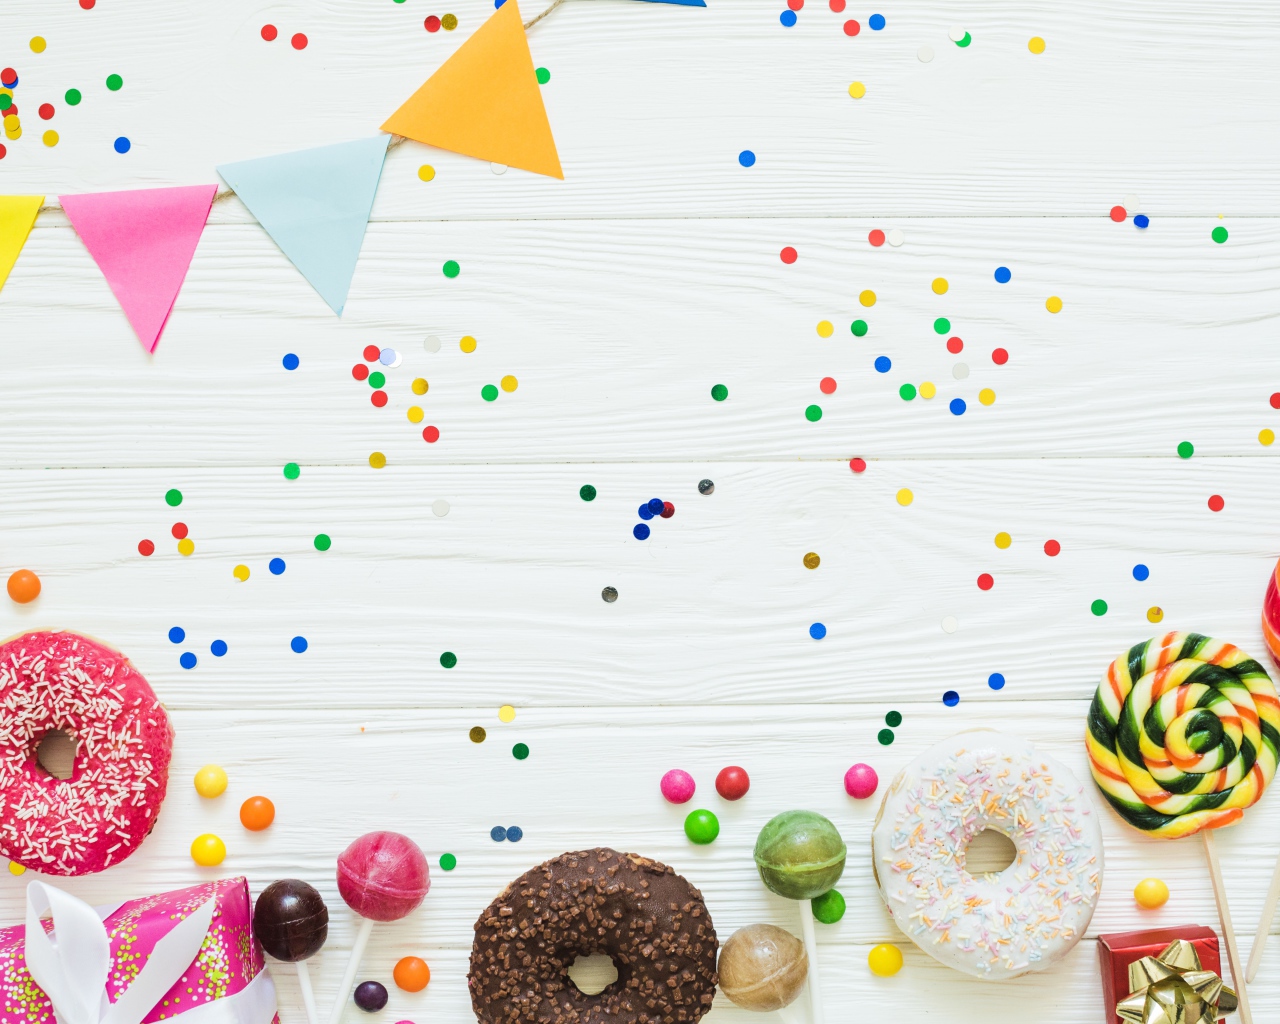 Пончики с глазурью и конфеты на праздничном фоне